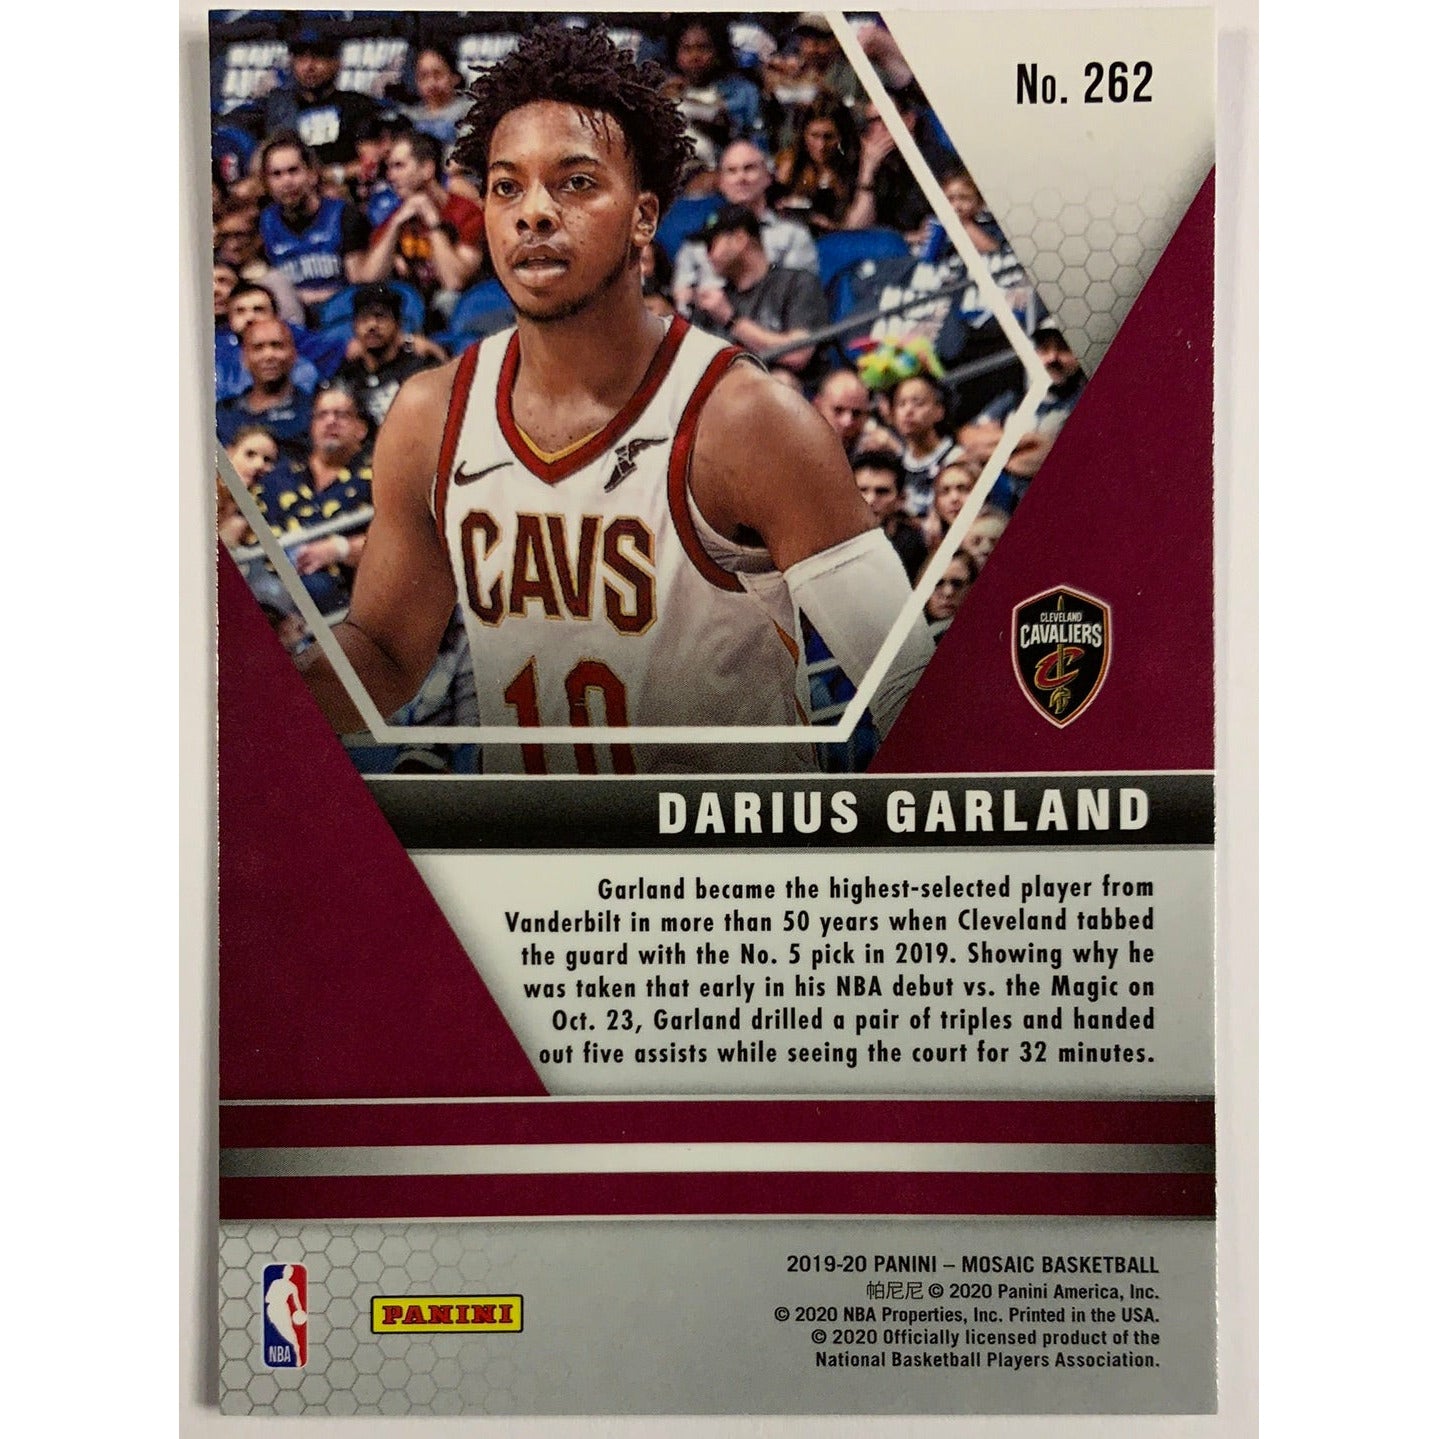 2020-21 Mosaic Darius Garland NBA Debut